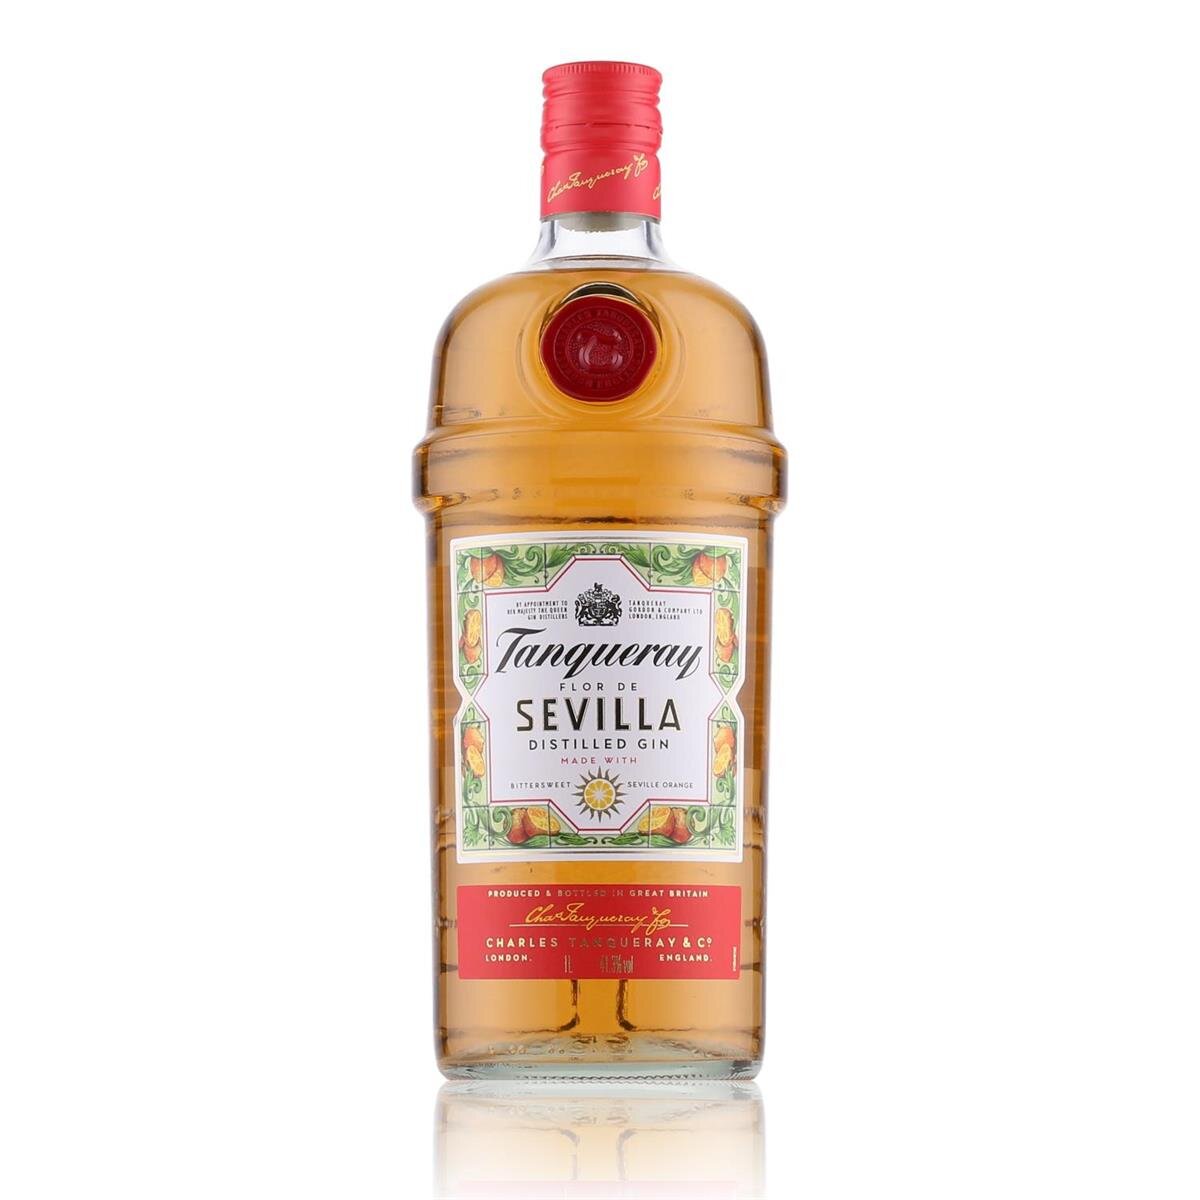 Tanqueray Flor de Sevilla Distilled Gin 41,3% Vol. 1l, 24,19 €